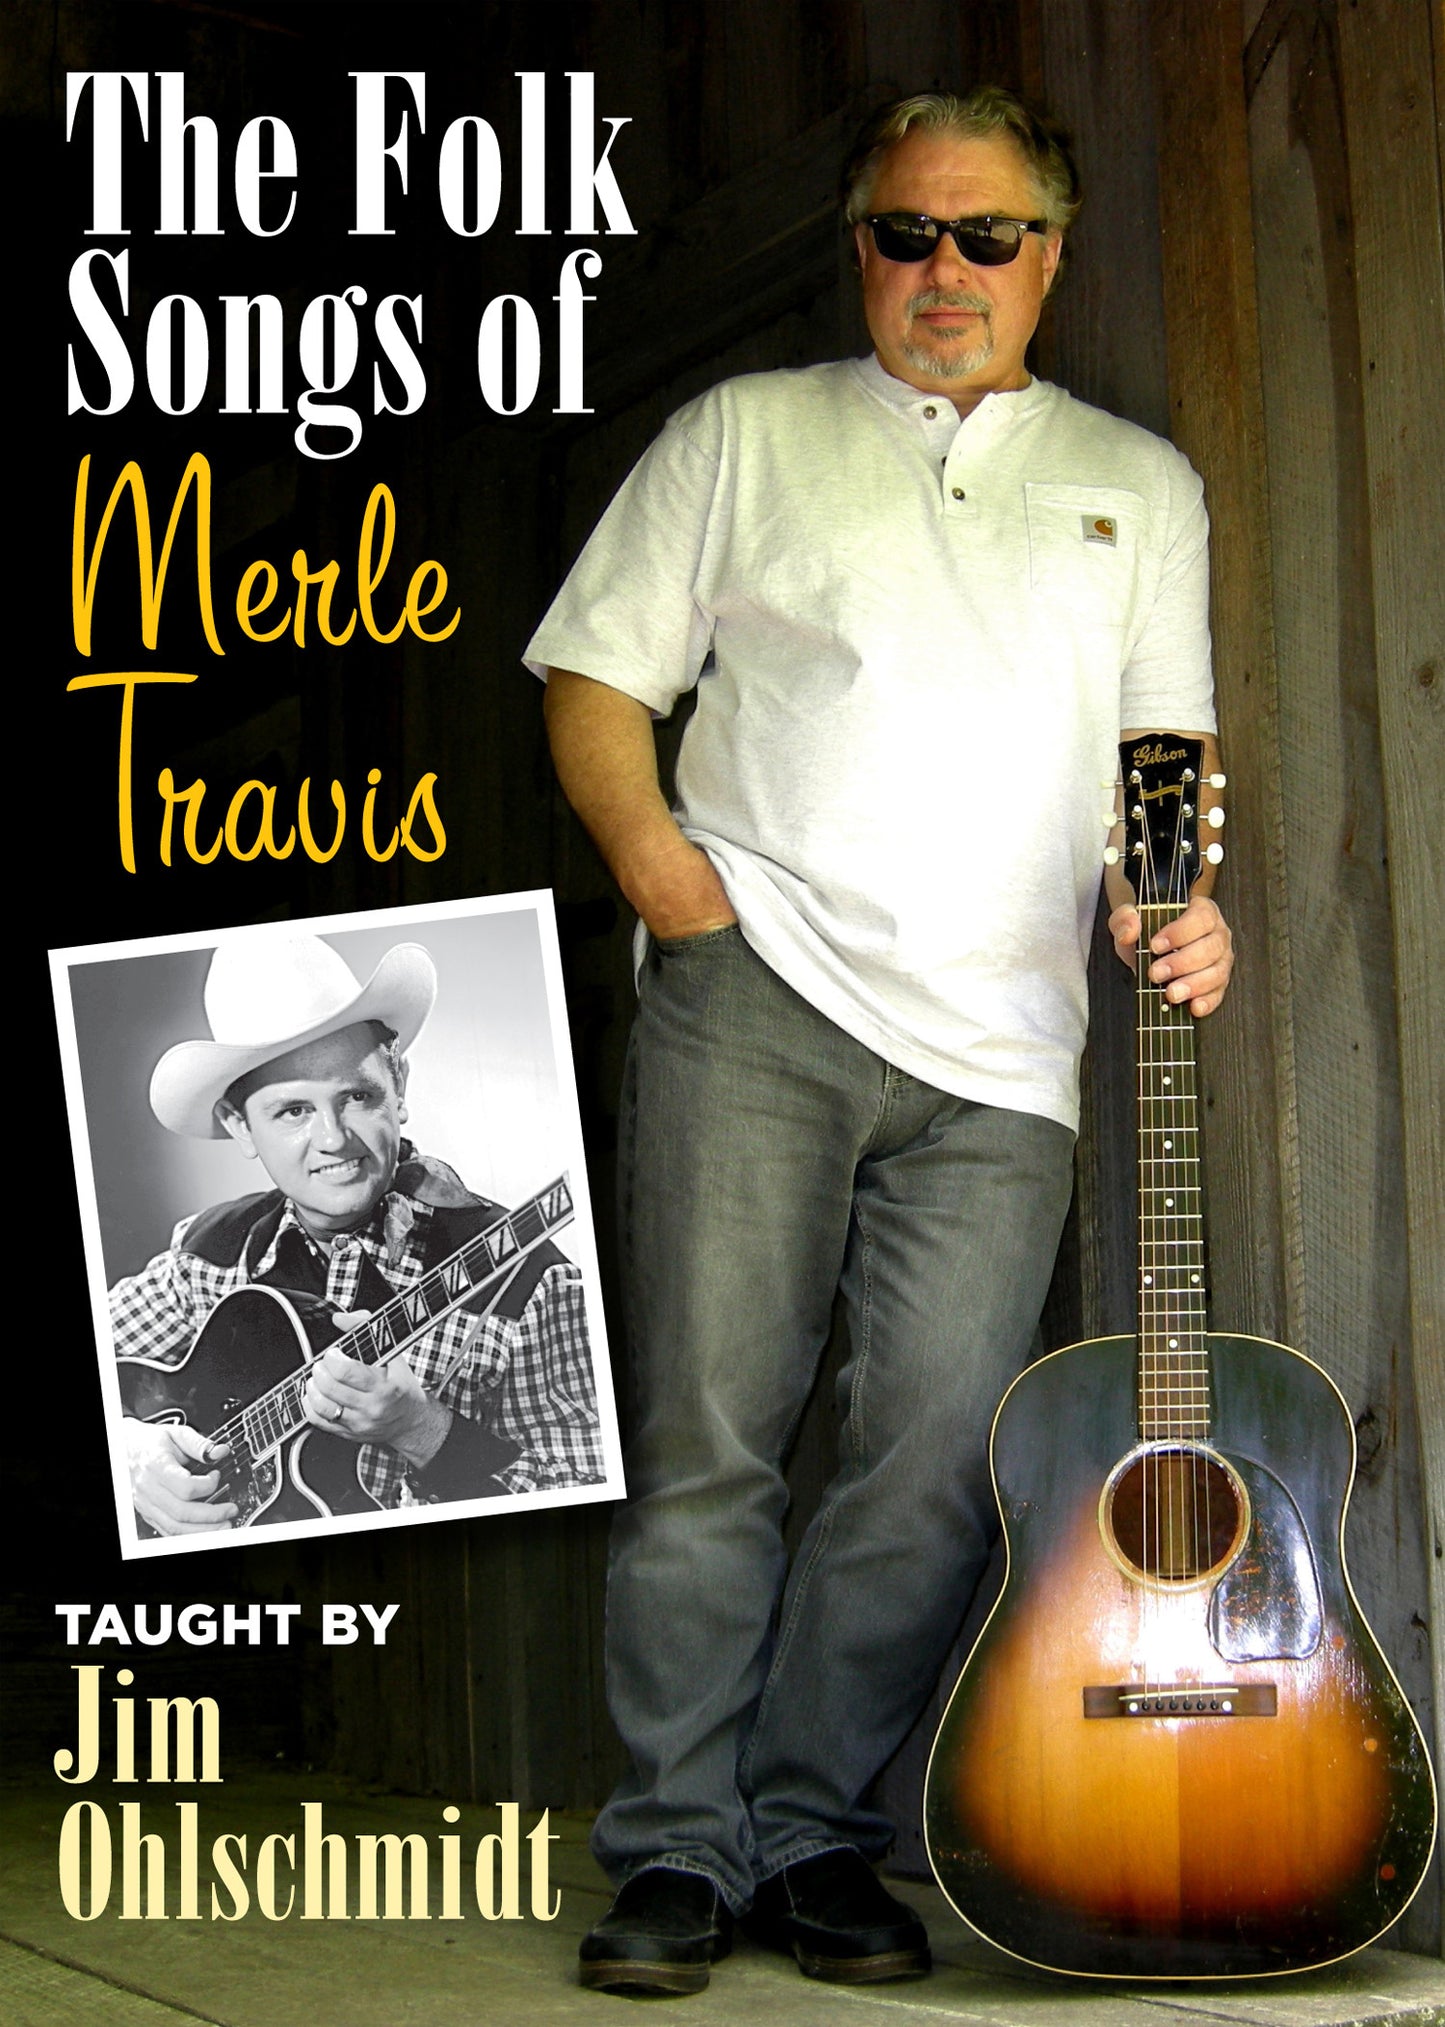 Image 1 of The Folk Songs of Merle Travis - SKU# 304-DVD1057 : Product Type Media : Elderly Instruments